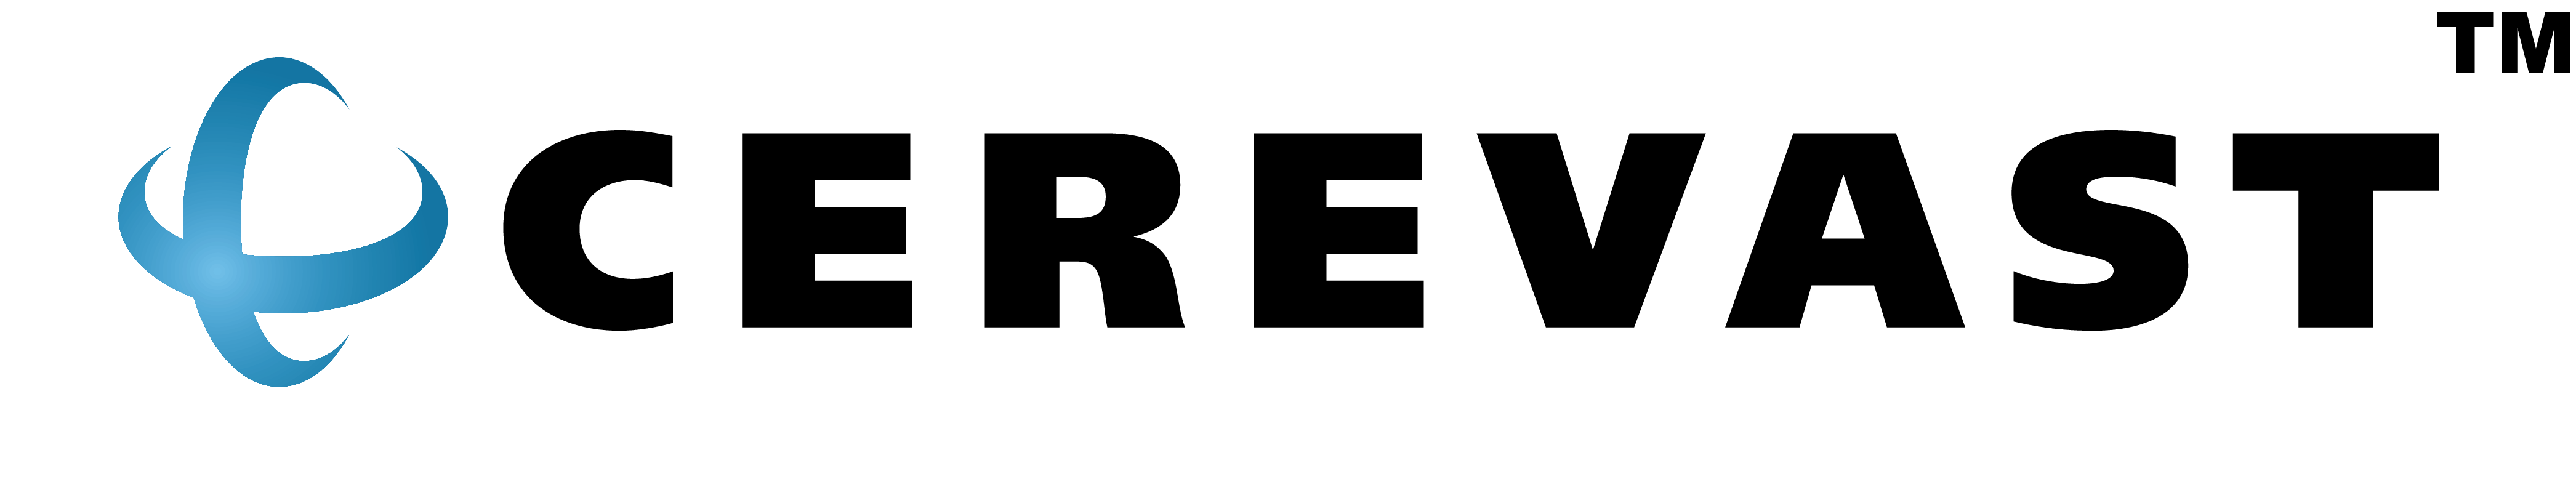 Cerevast Medical logo